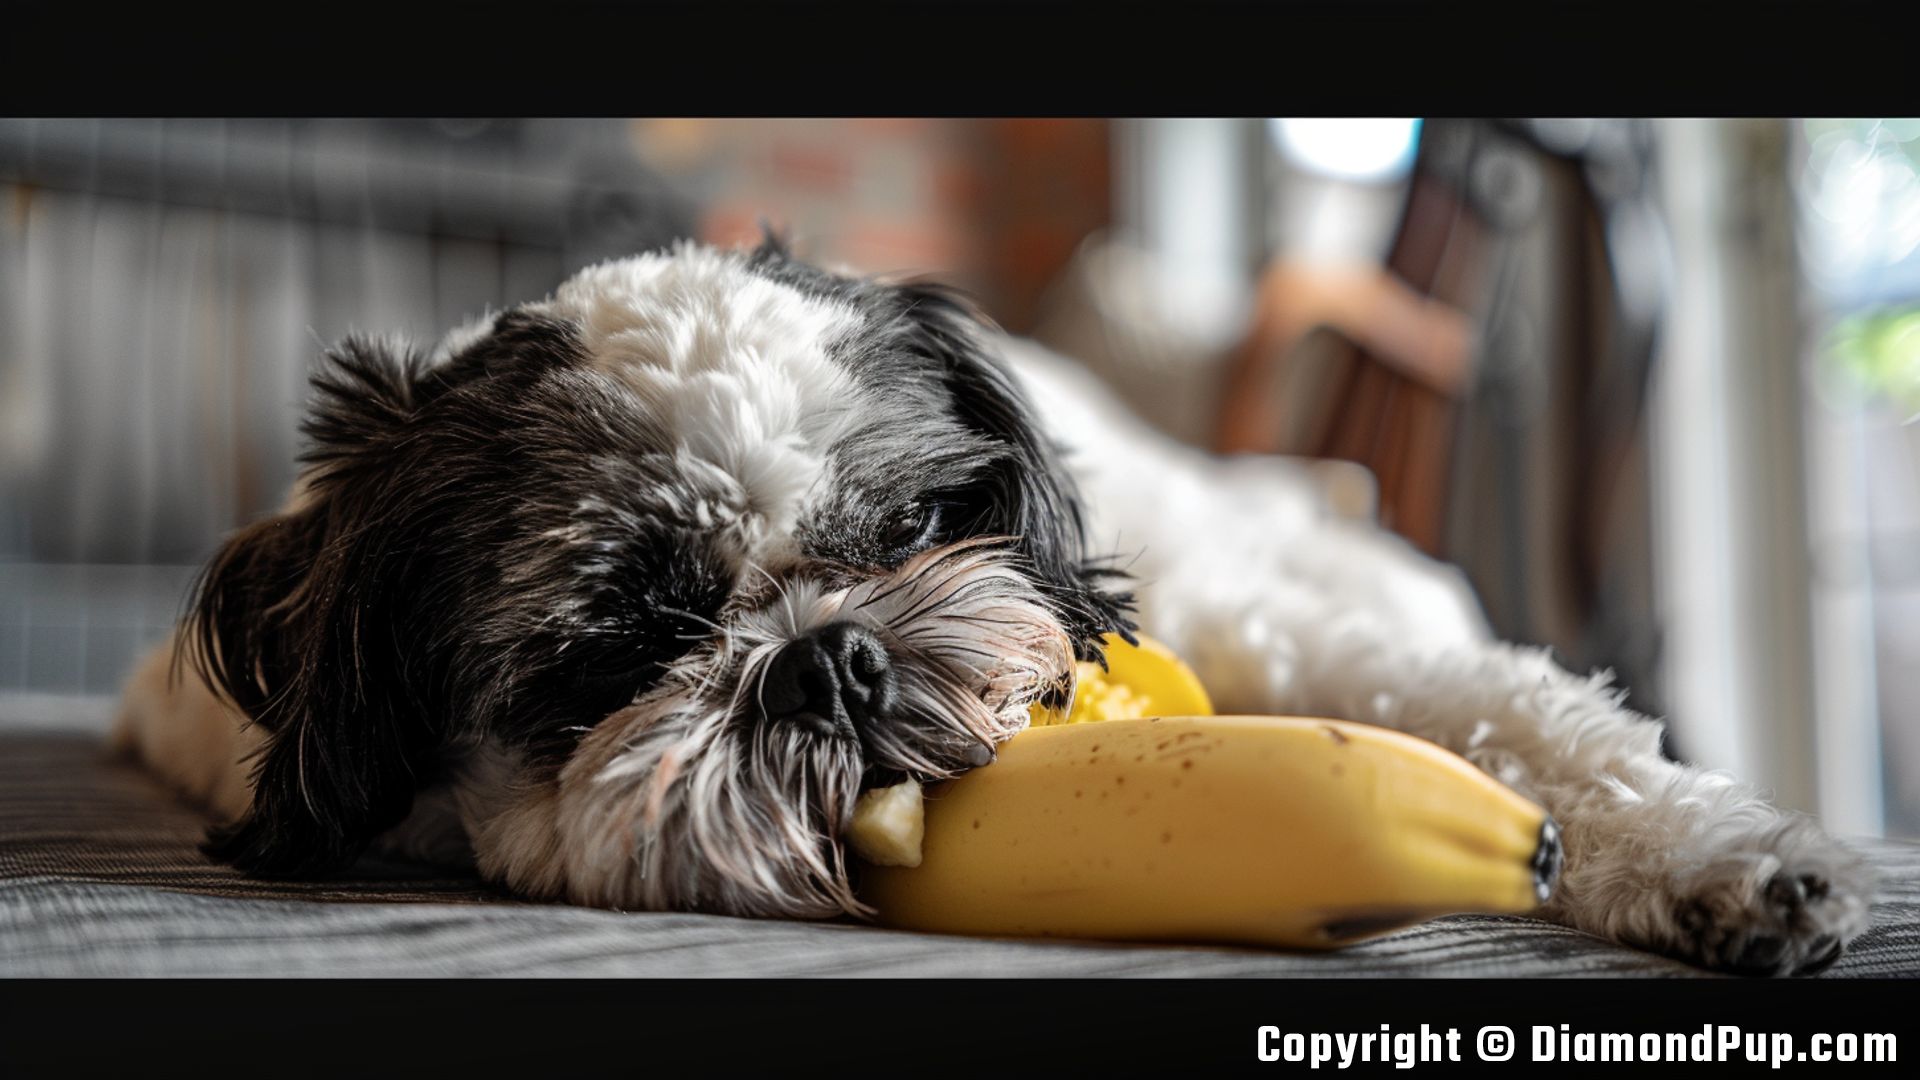 Photo of a Cute Shih Tzu Eating Banana